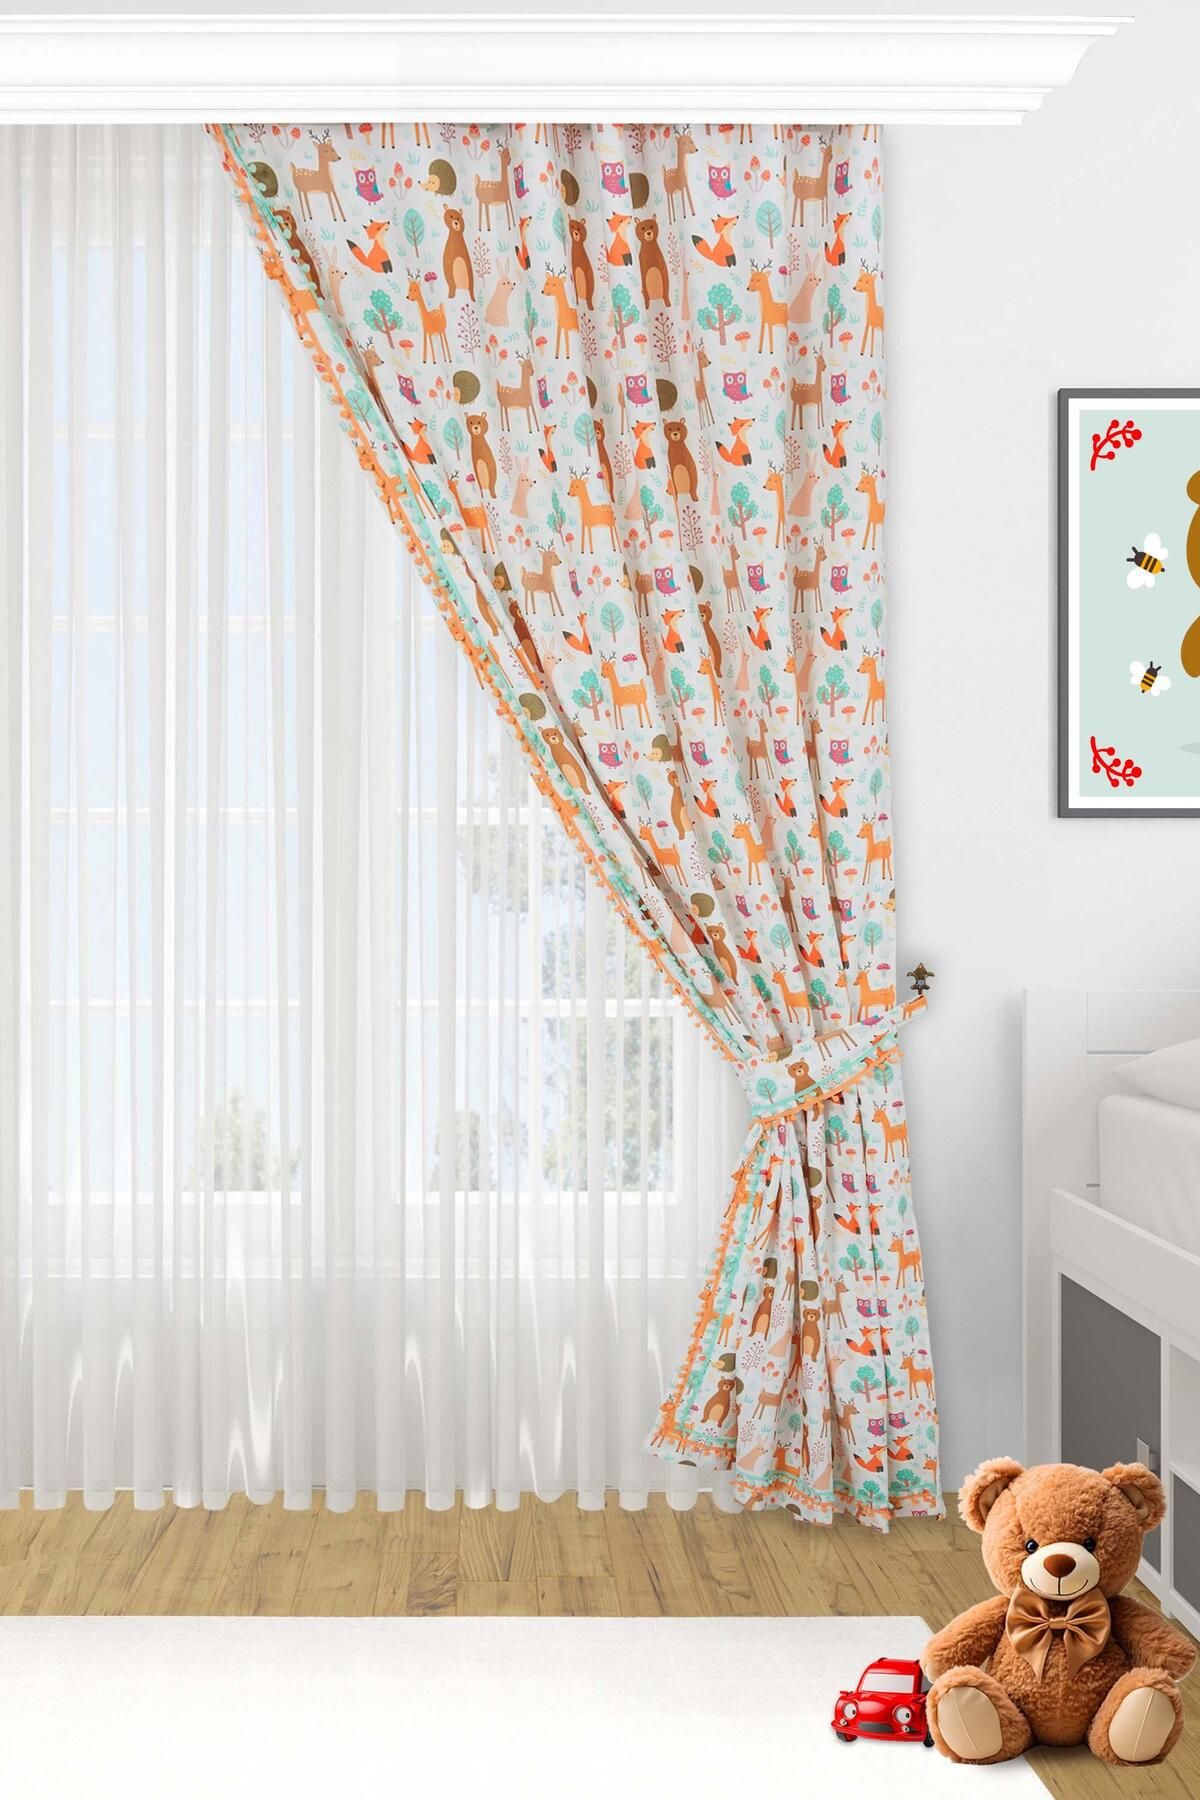 Aisha's Design Kenarları Renkli Ponponlu Desenli Çocuk Odası Fon Perde Sağ Kenar 245x140 Cm,pr-34sag